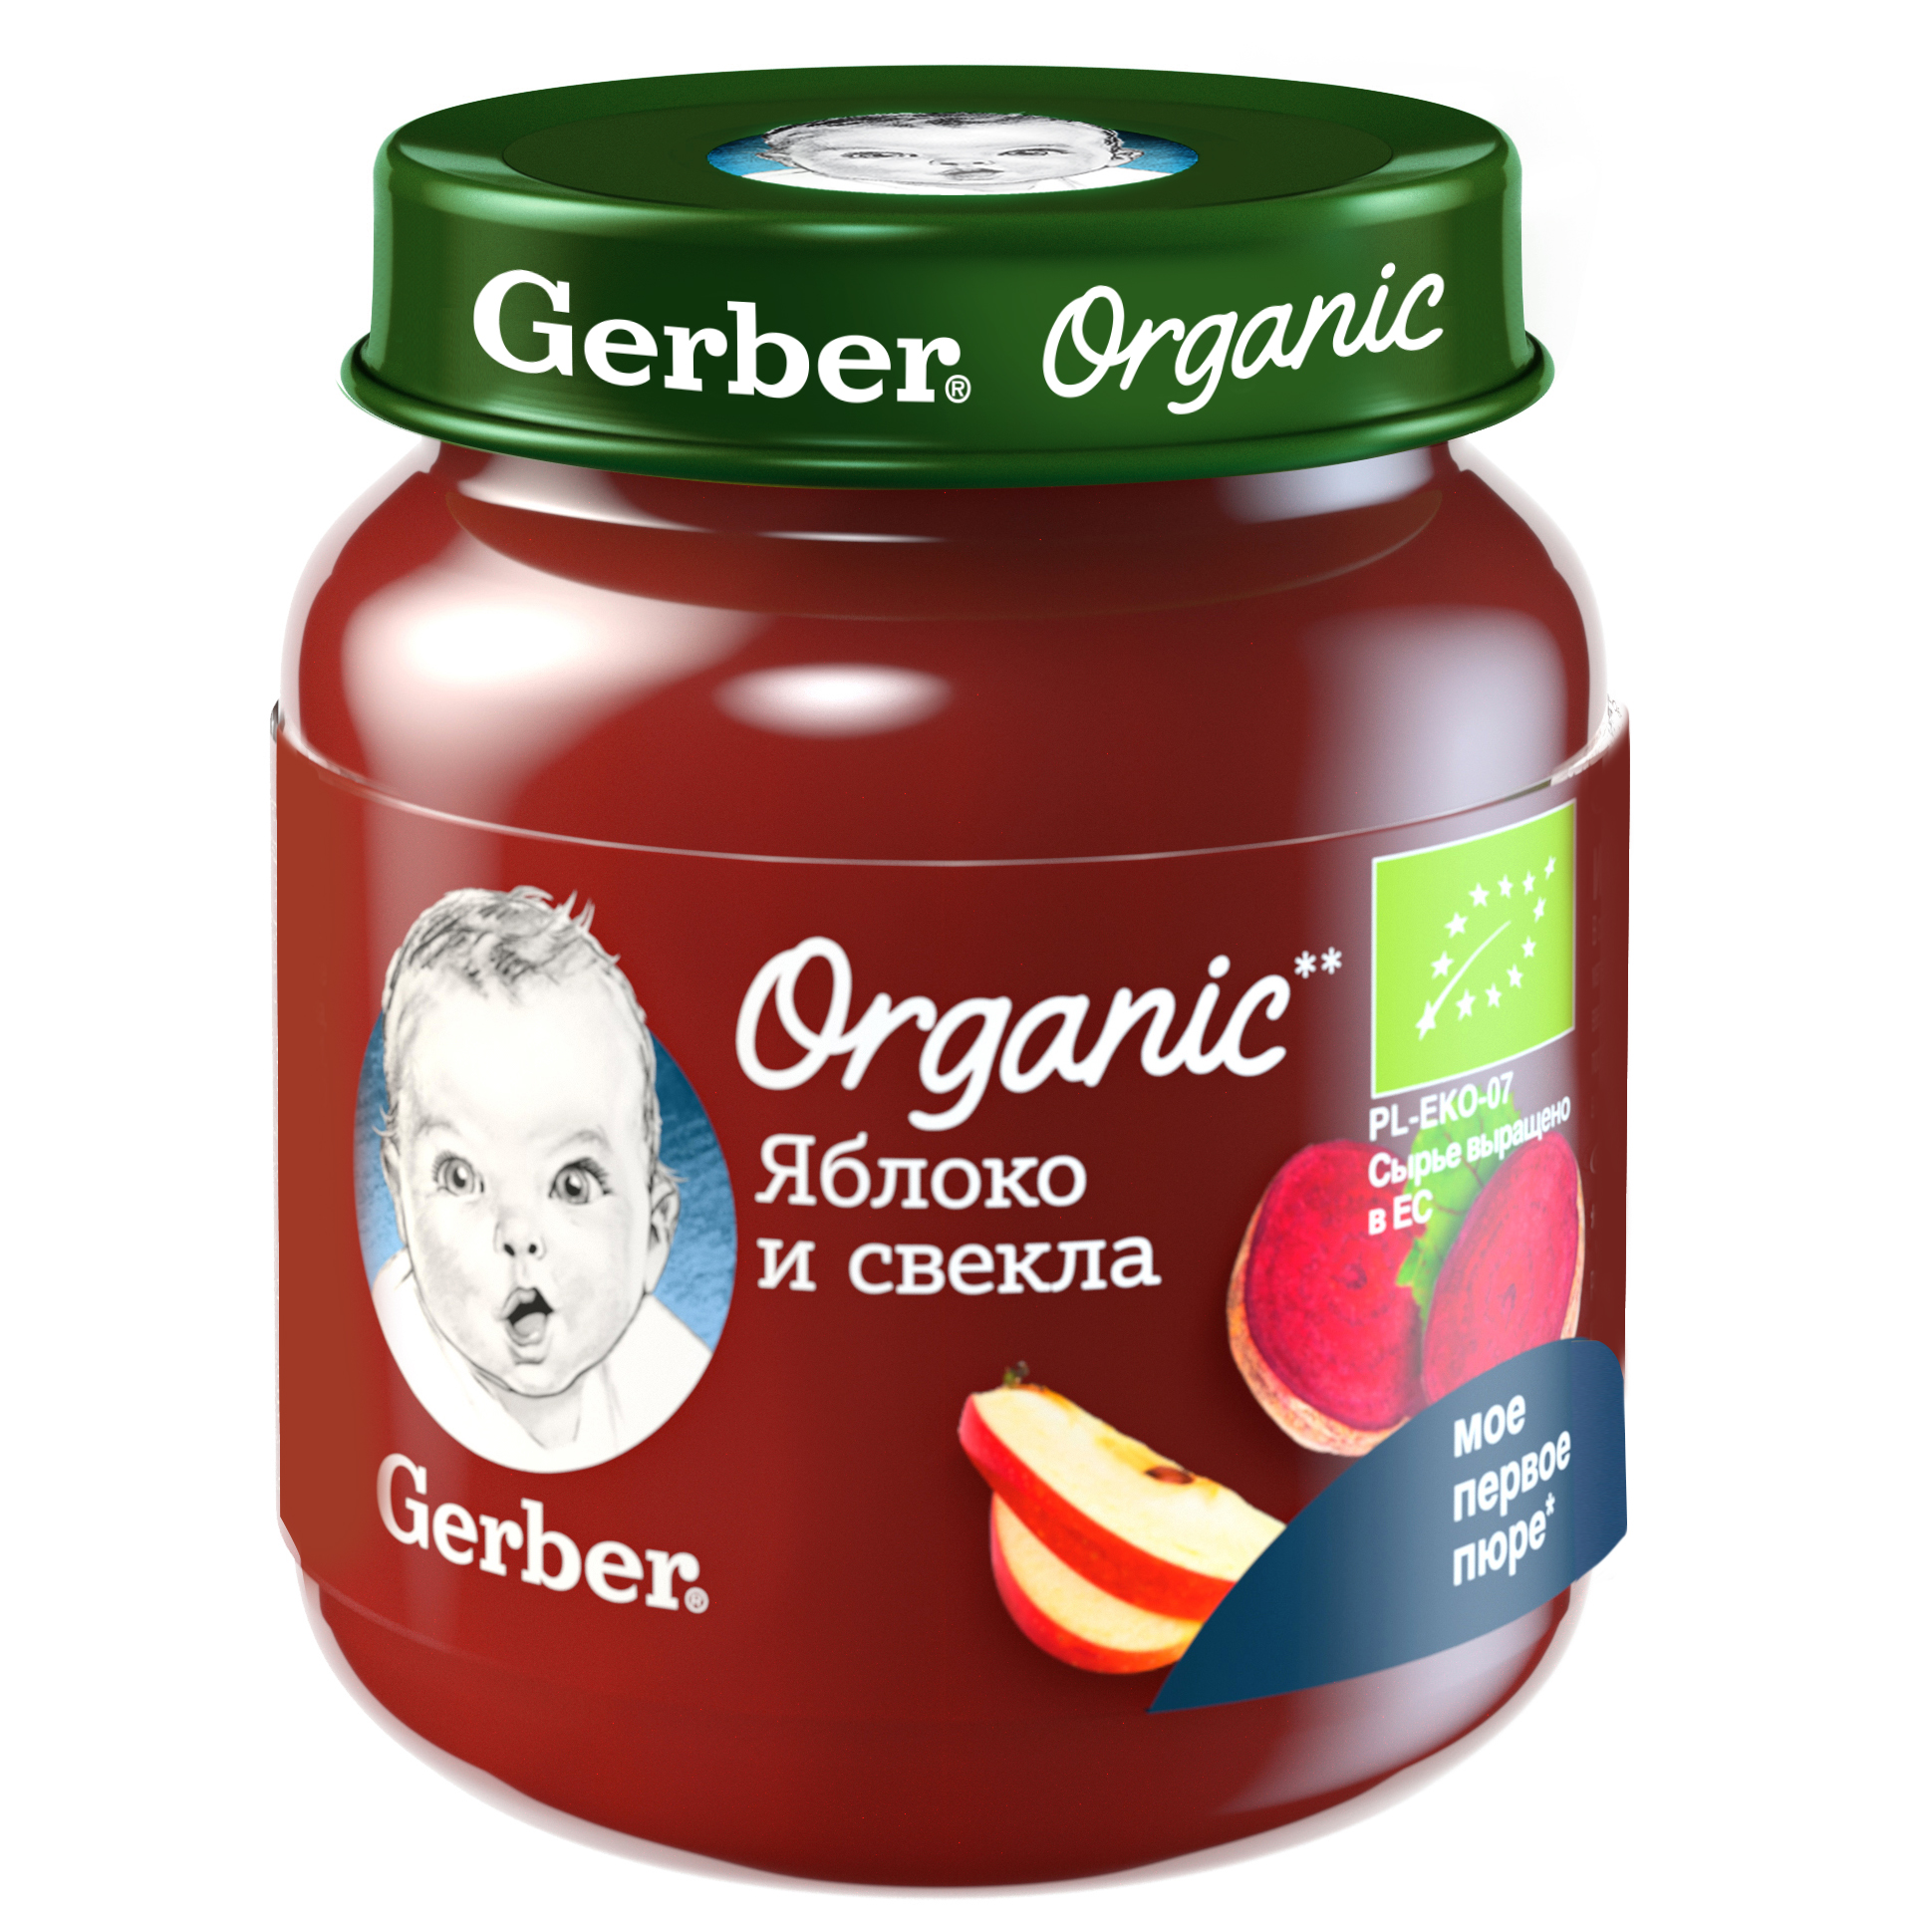 Gerber Organic Яблоко и свекла с 5мес 125г фруктово-овощное органическое пюре (Гербер)